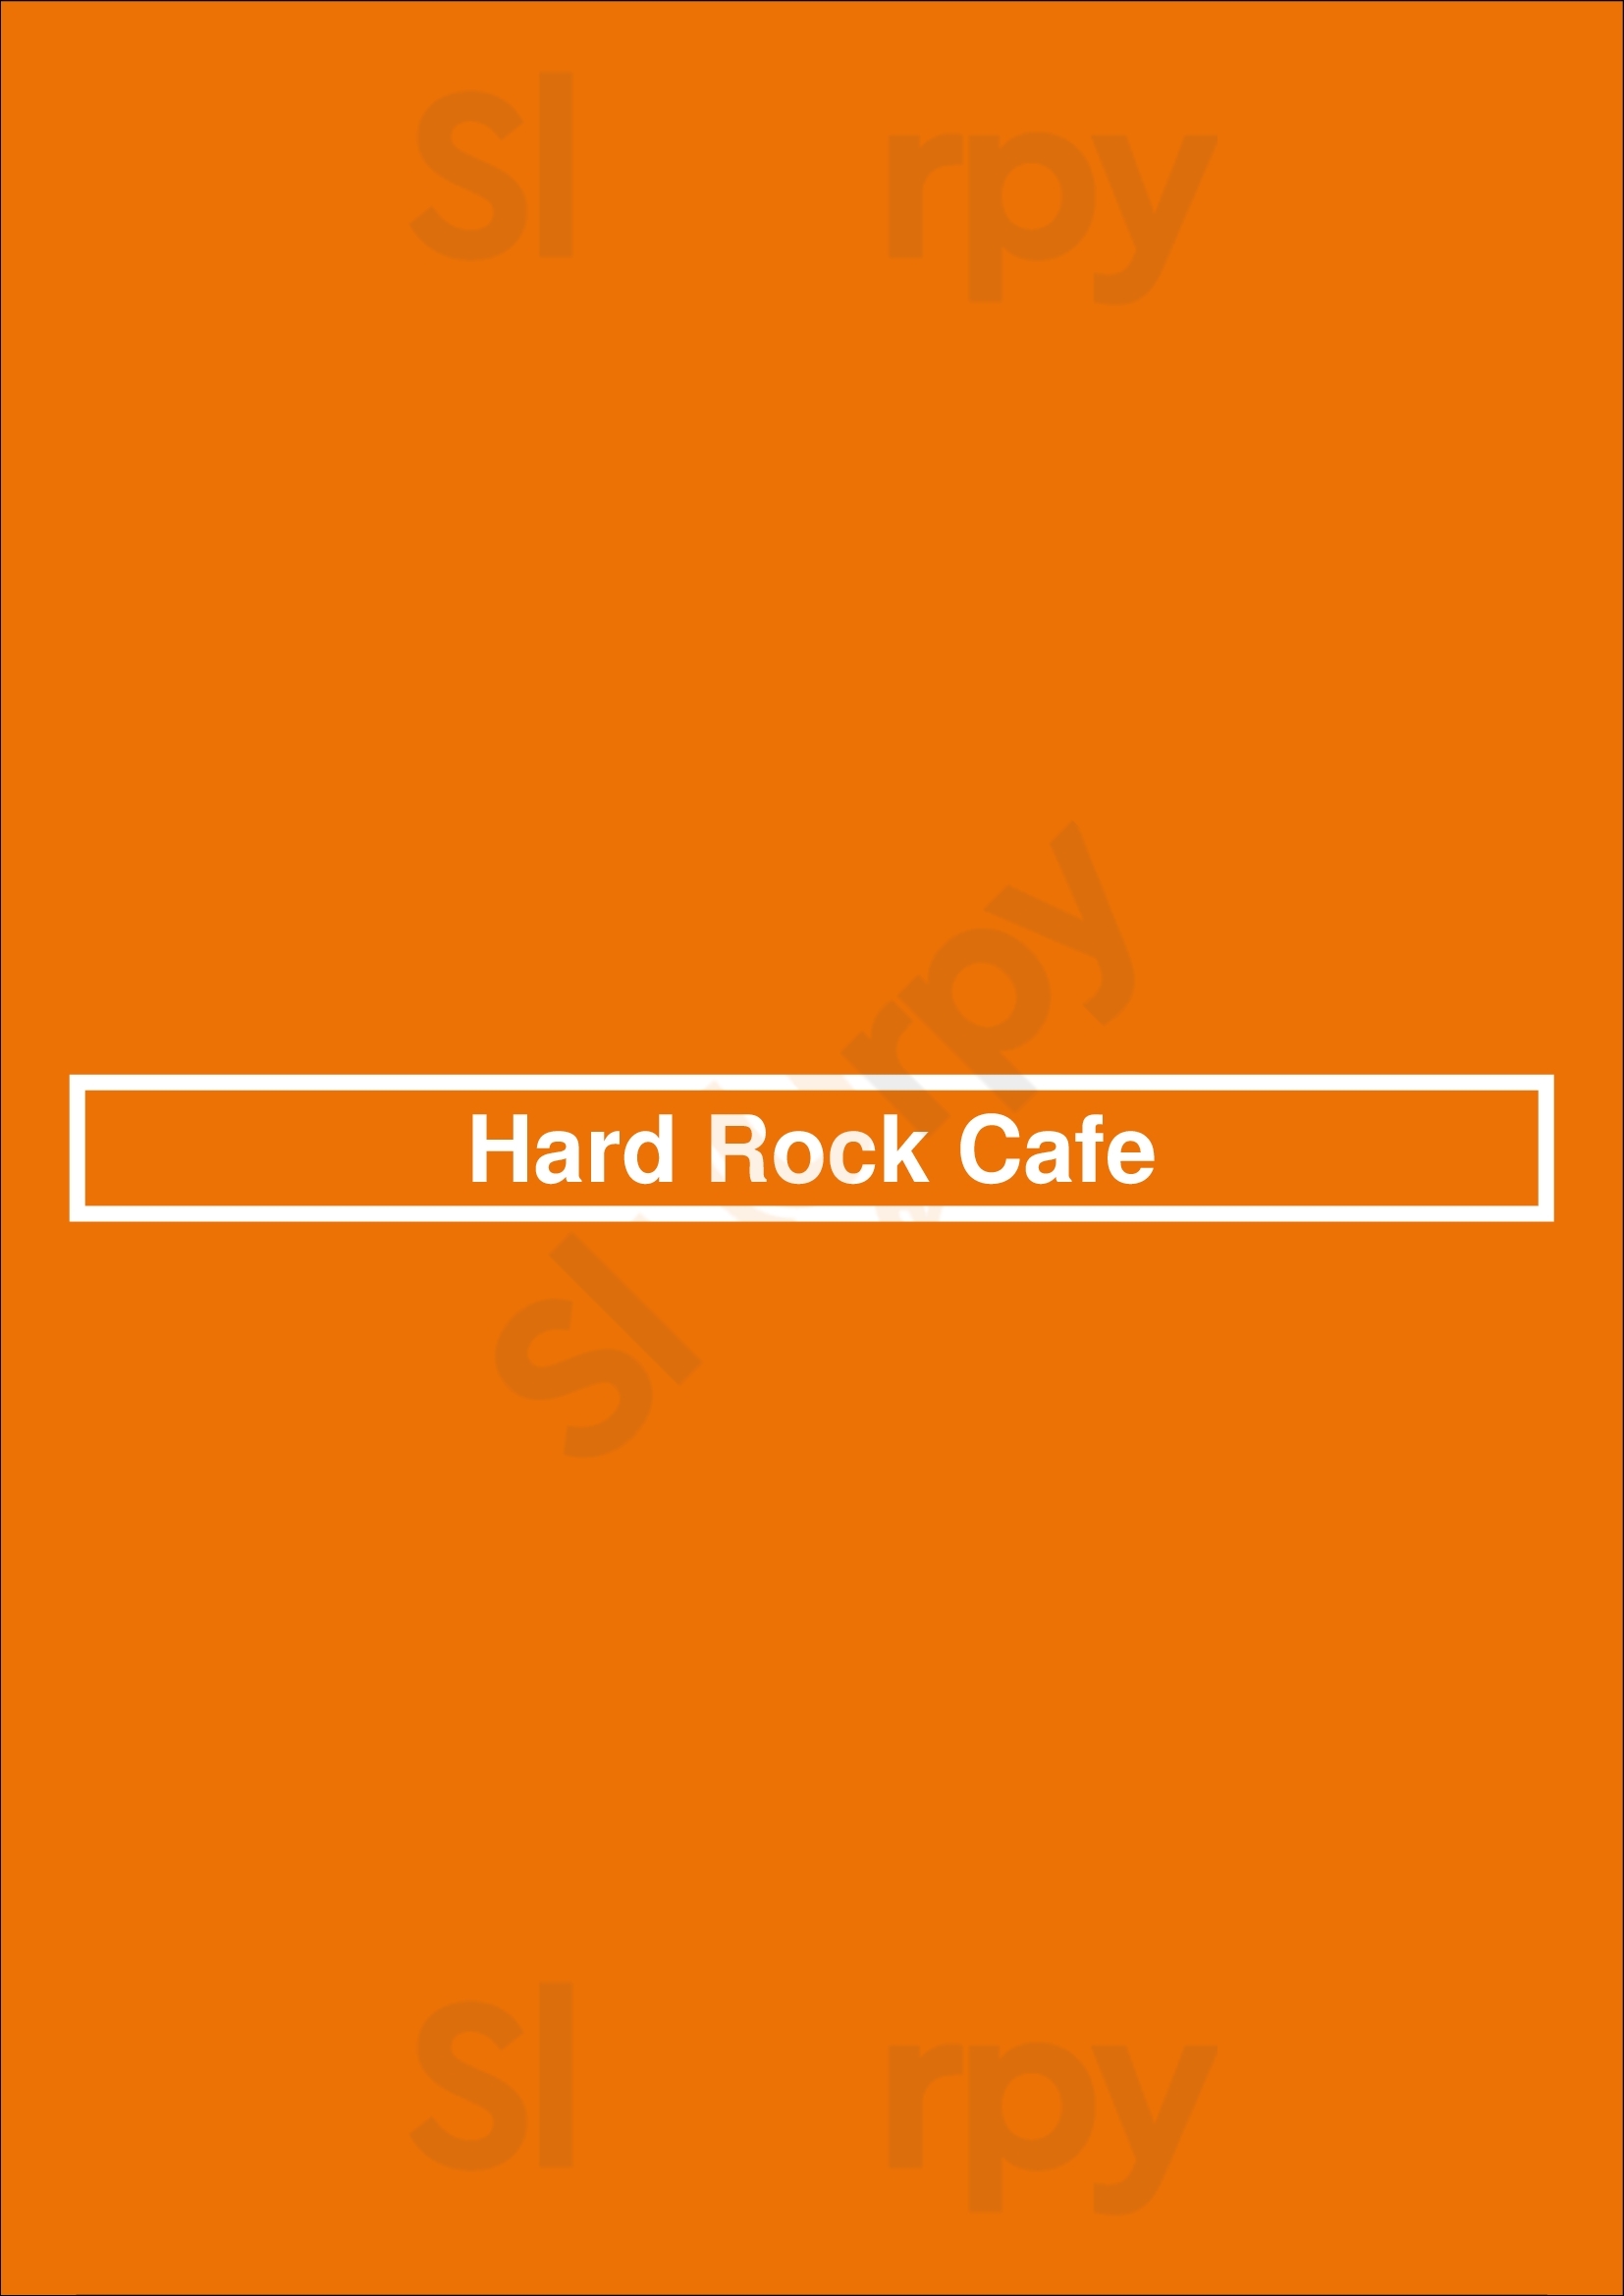 Hard Rock Cafe Praha Menu - 1